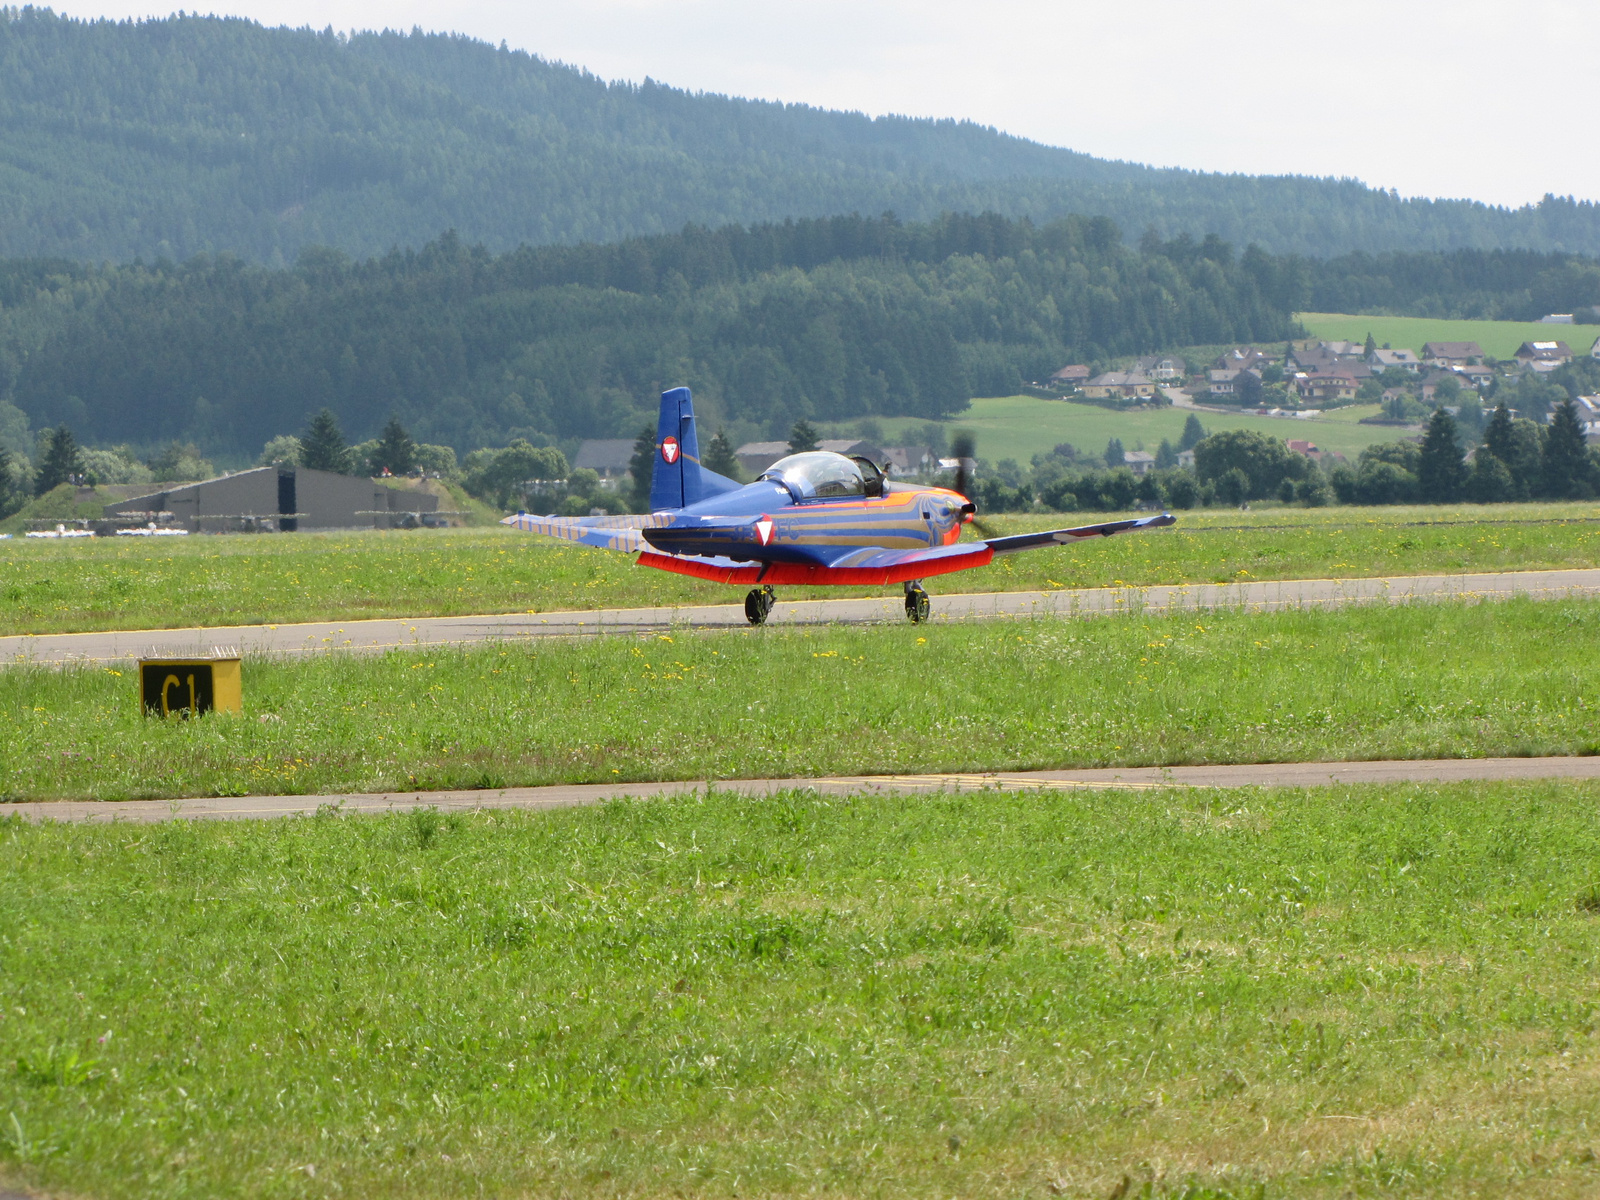 Zeltweg, Airpower 2013, Aircraft 3H-FC, Pilatus PC-7 T